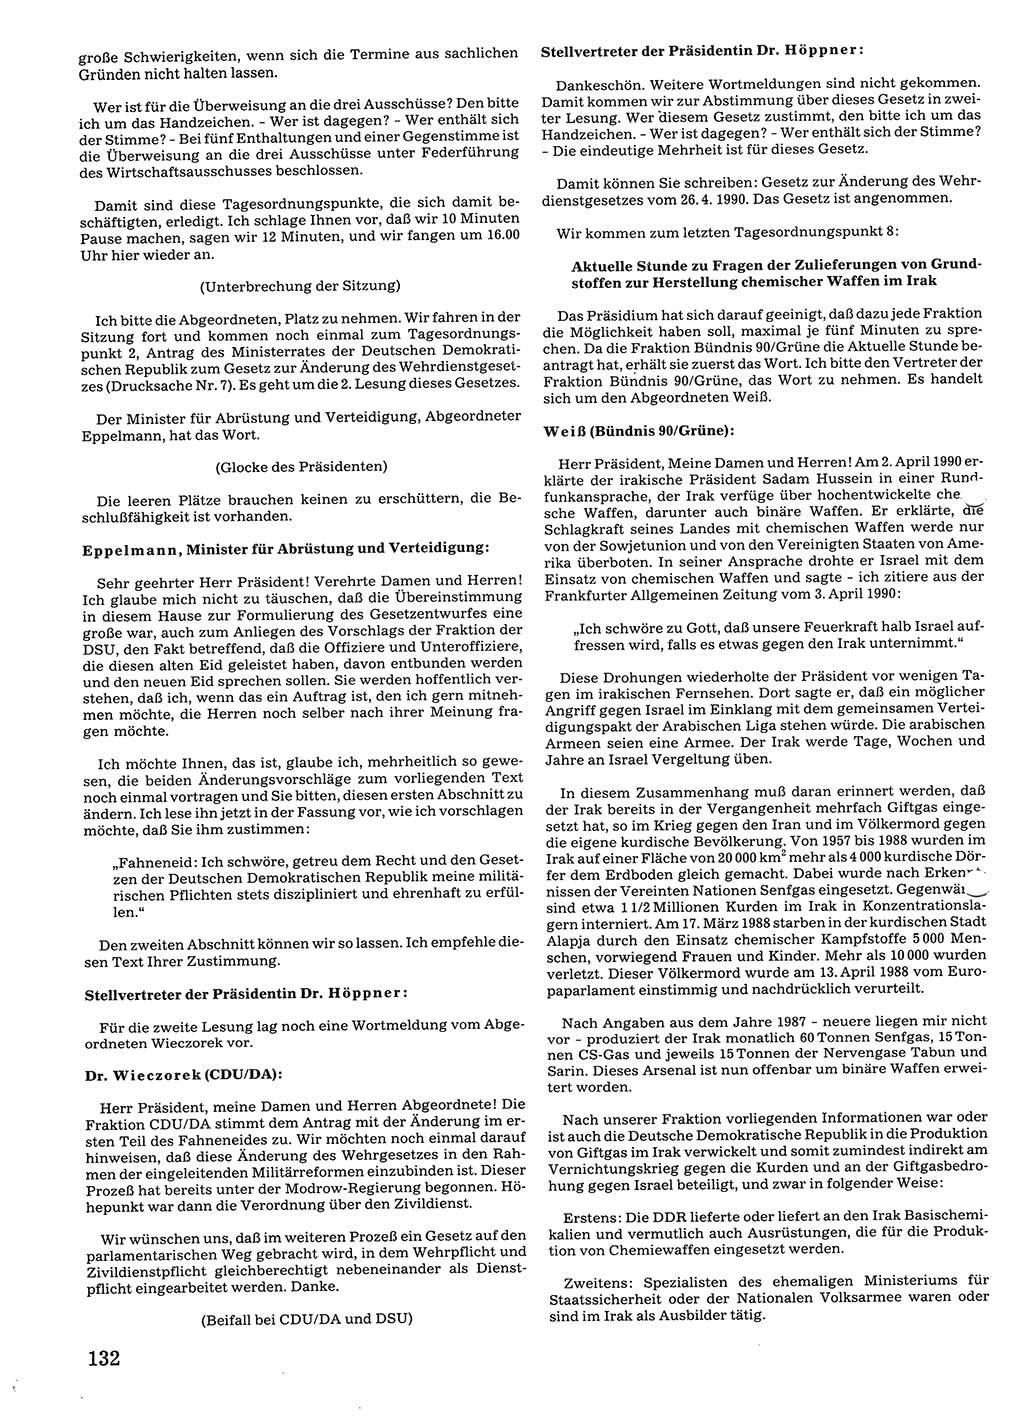 Tagungen der Volkskammer (VK) der Deutschen Demokratischen Republik (DDR), 10. Wahlperiode 1990, Seite 132 (VK. DDR 10. WP. 1990, Prot. Tg. 1-38, 5.4.-2.10.1990, S. 132)